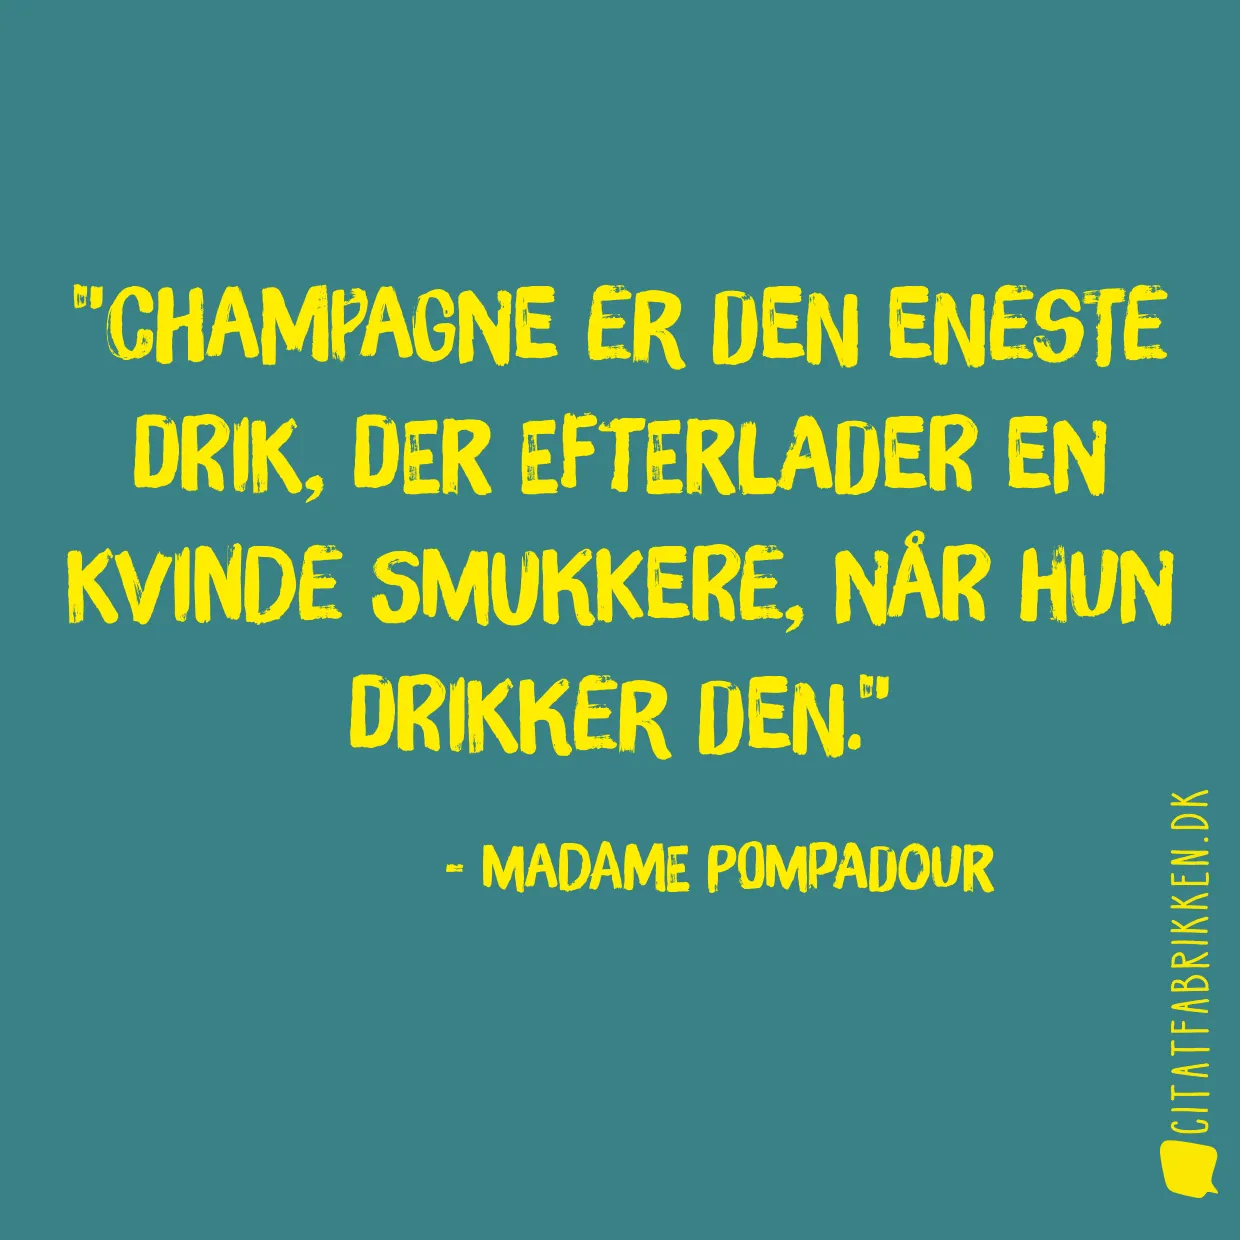 Champagne er den eneste drik, der efterlader en kvinde smukkere, når hun drikker den.